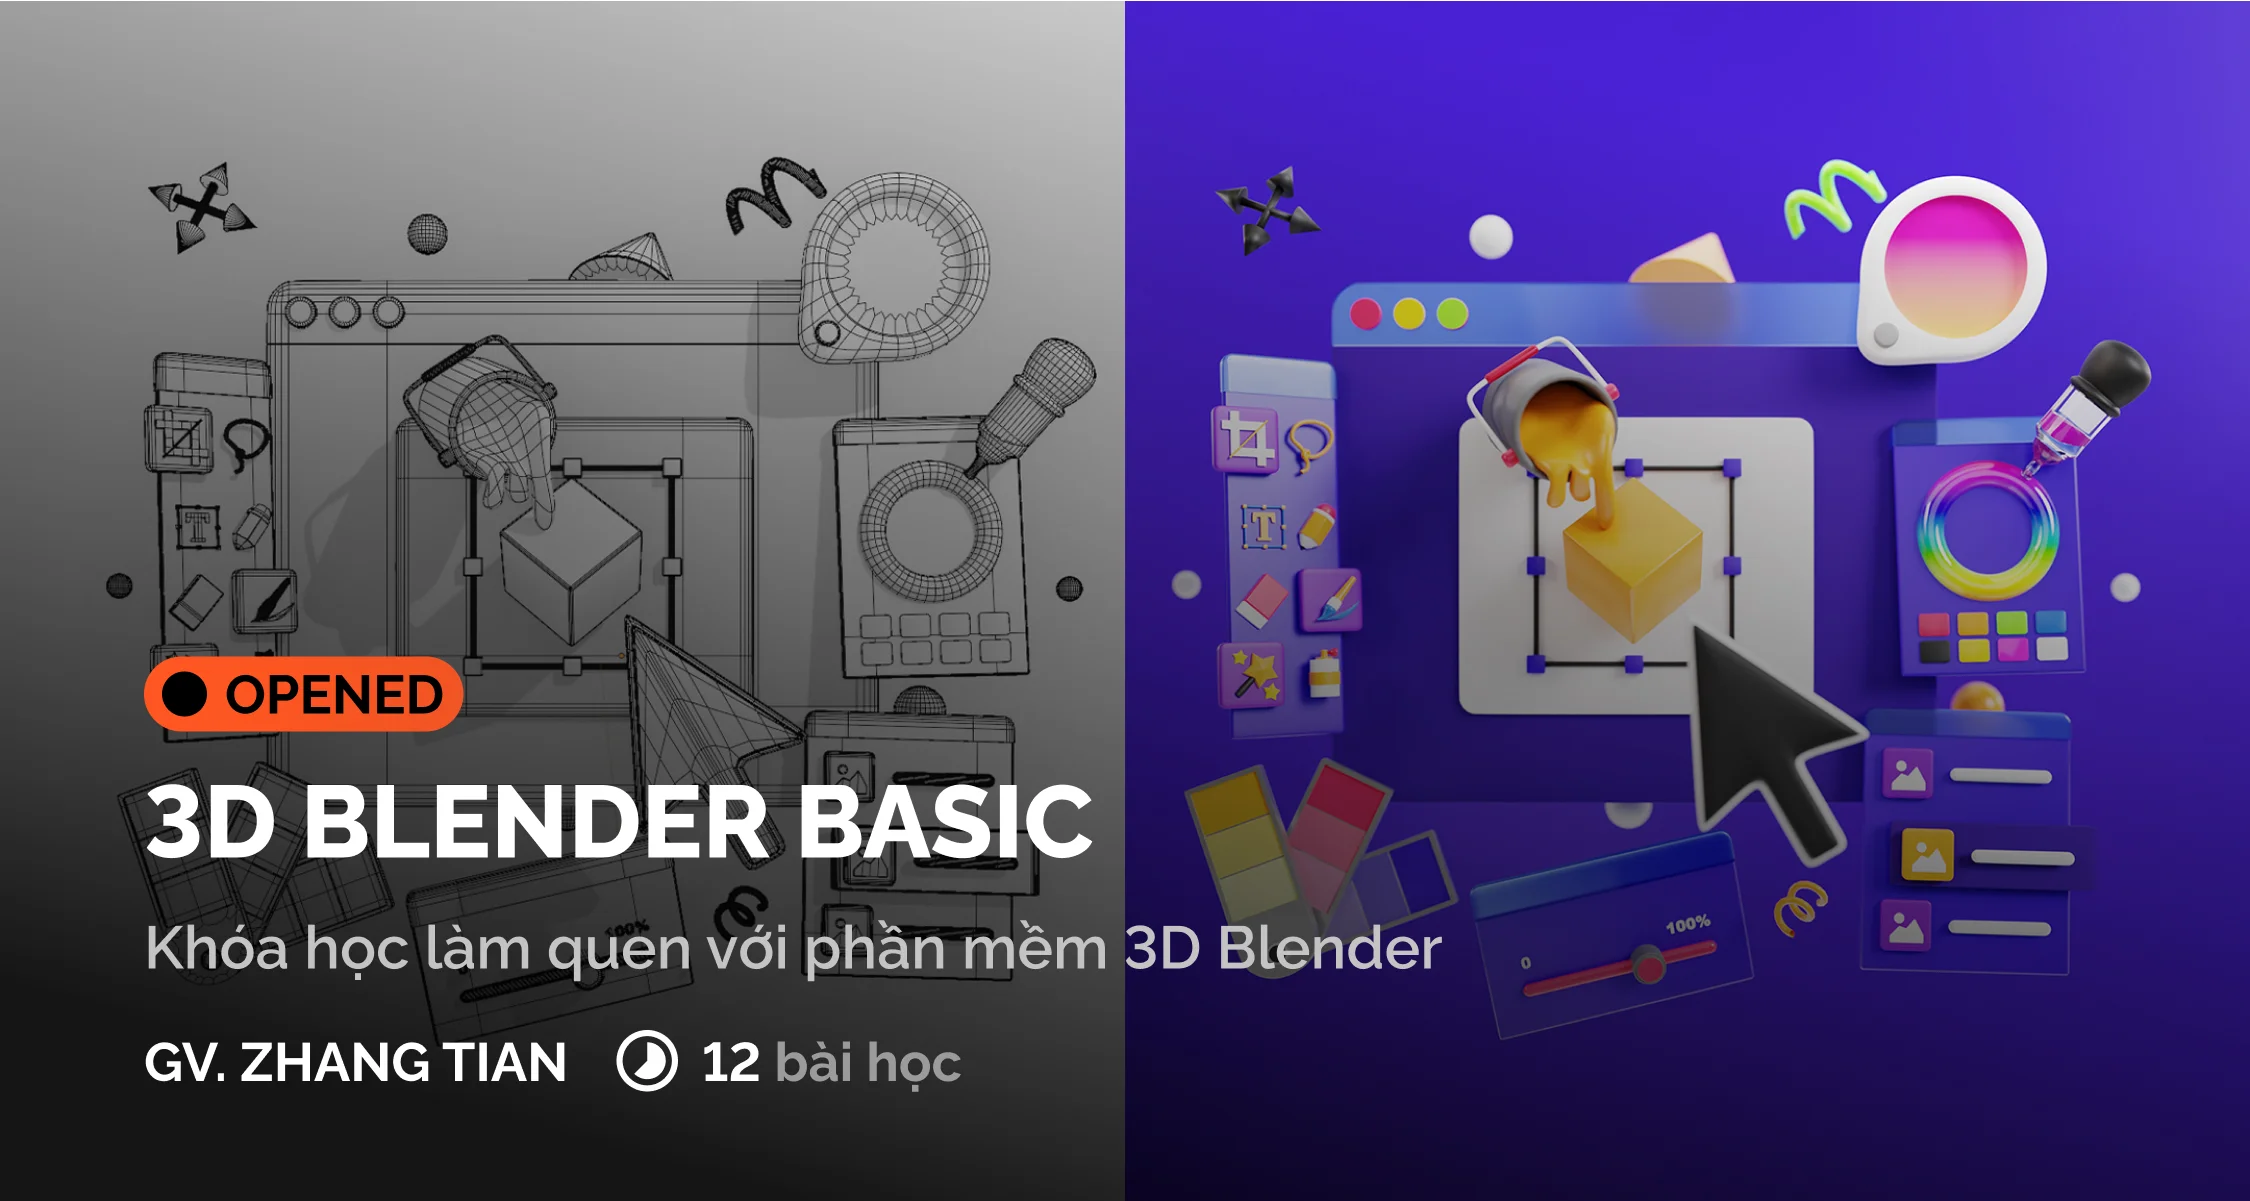 3D BLENDER BASIC